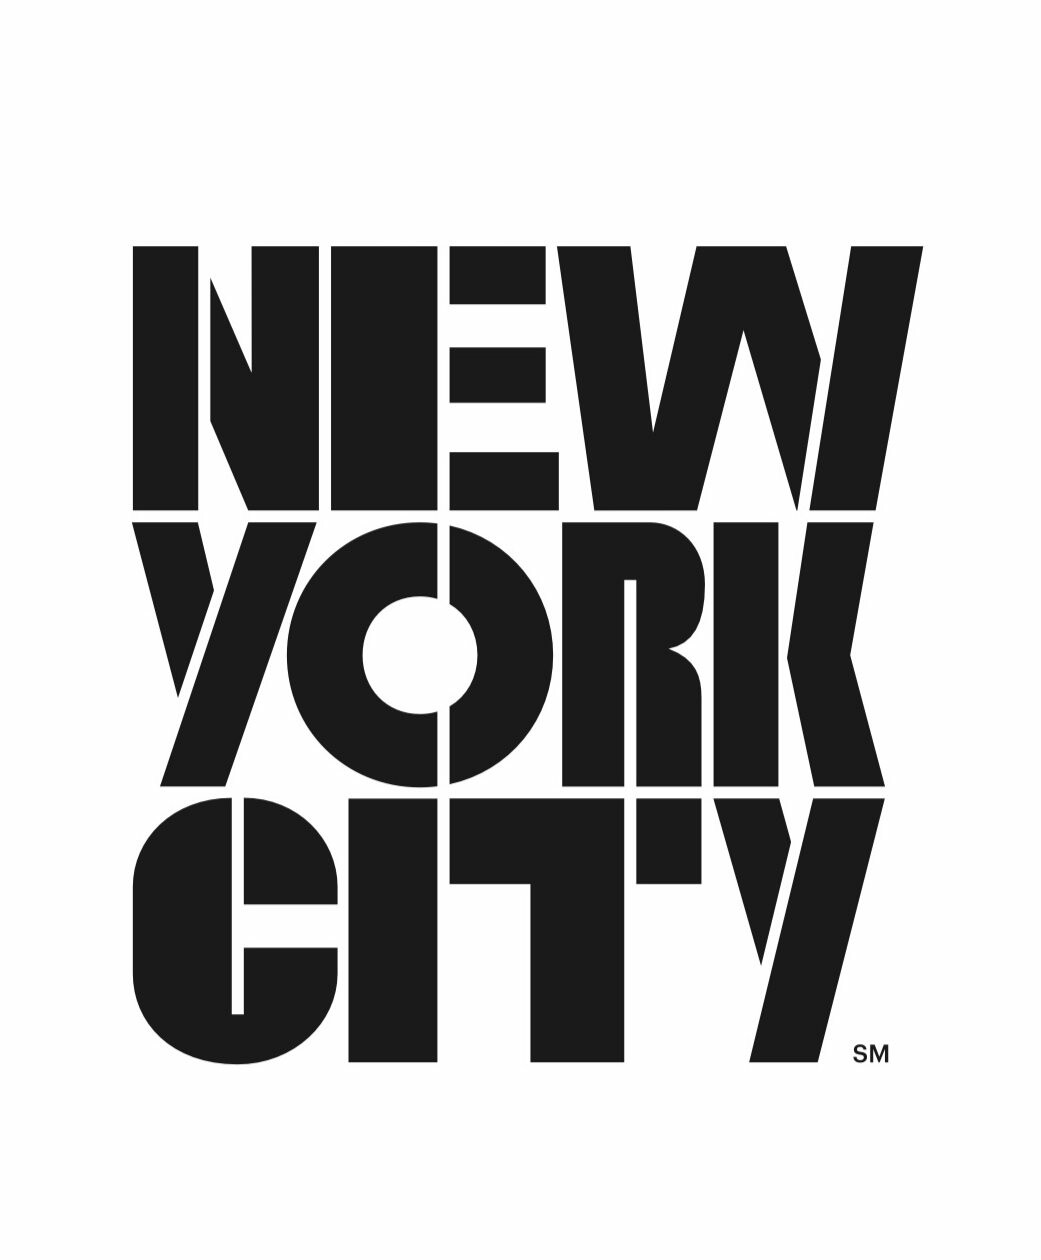 A NYC & Company agora é New York Tourism + Conventions